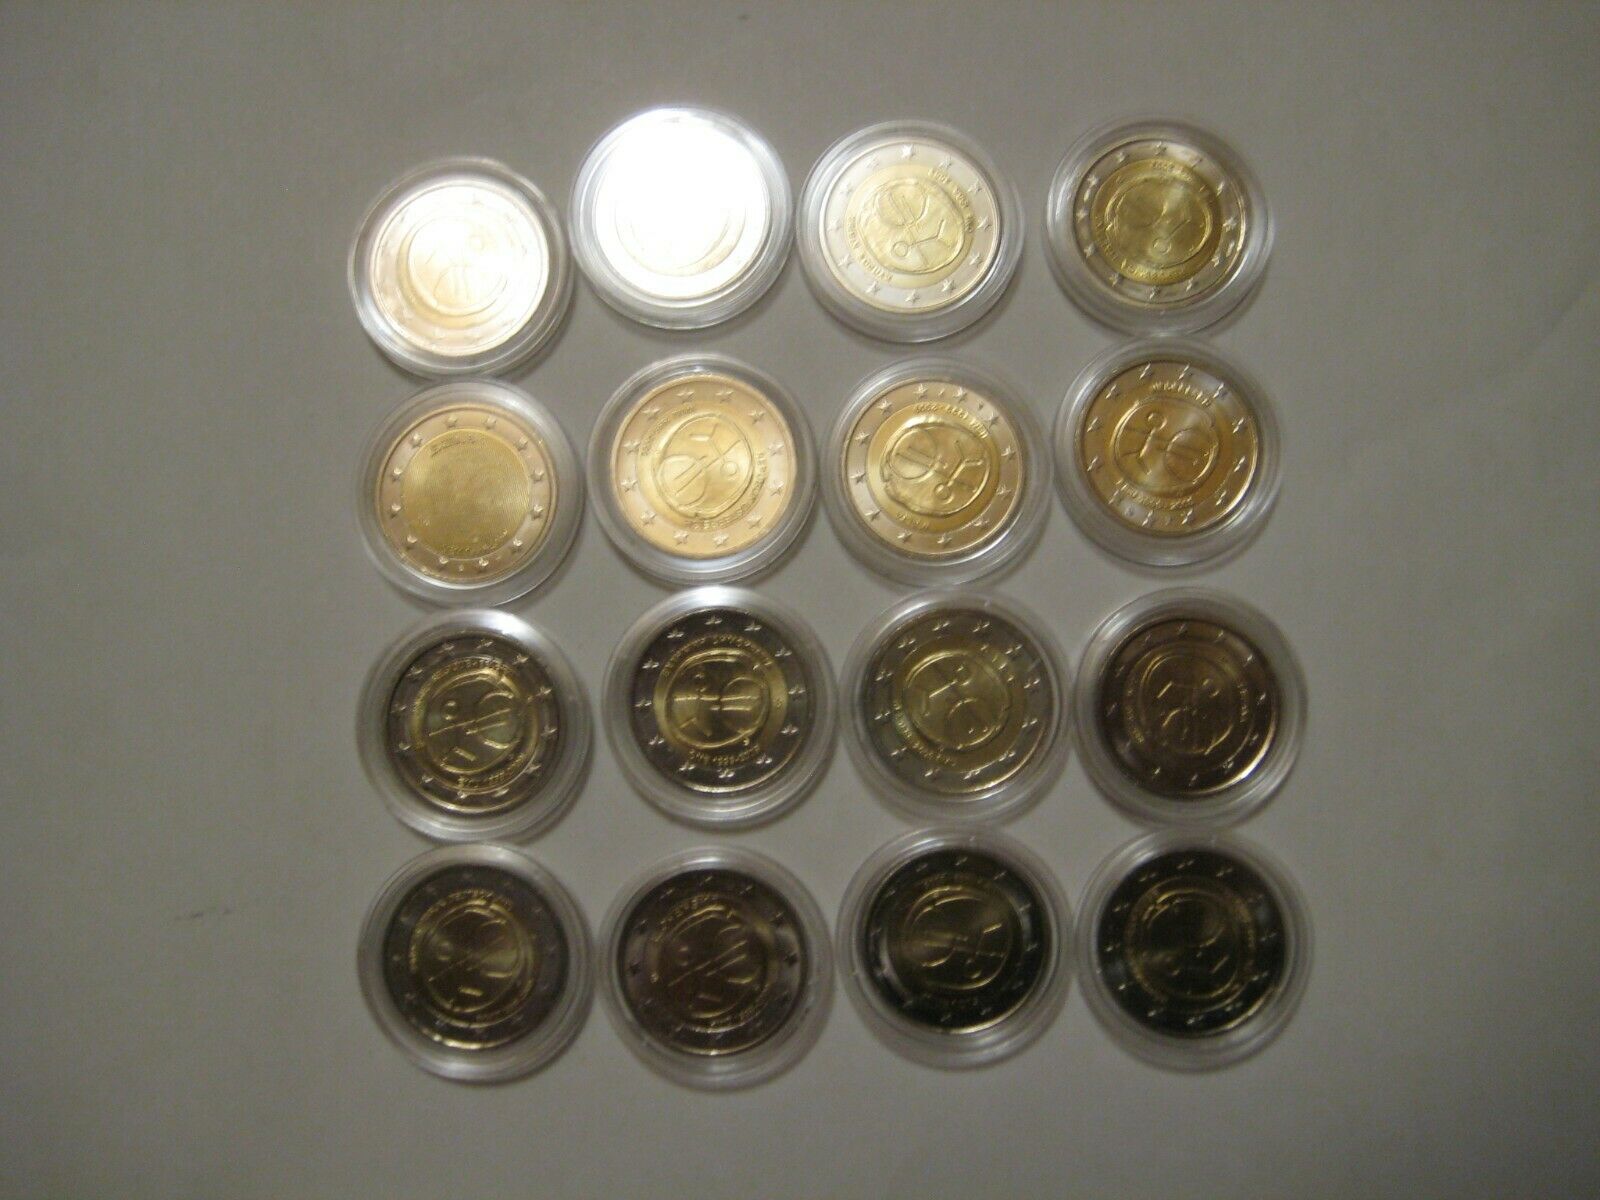  Alle 16 Münzen 2€ 10 Jahre WWU   